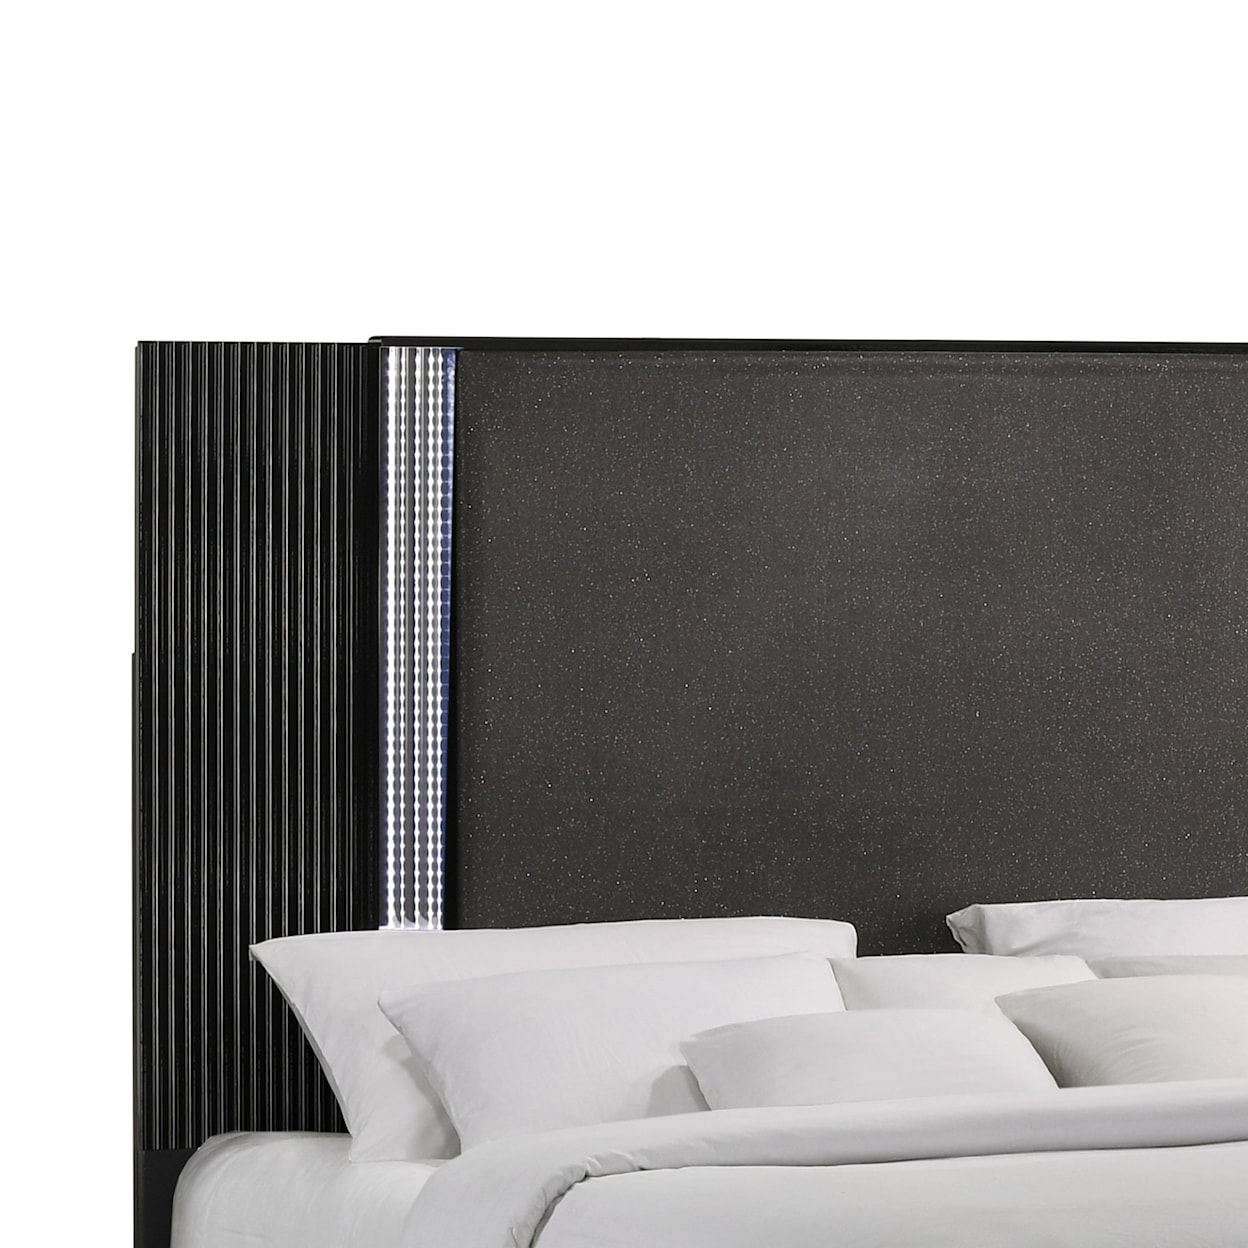 Global Furniture Aspen Queen Panel Bed